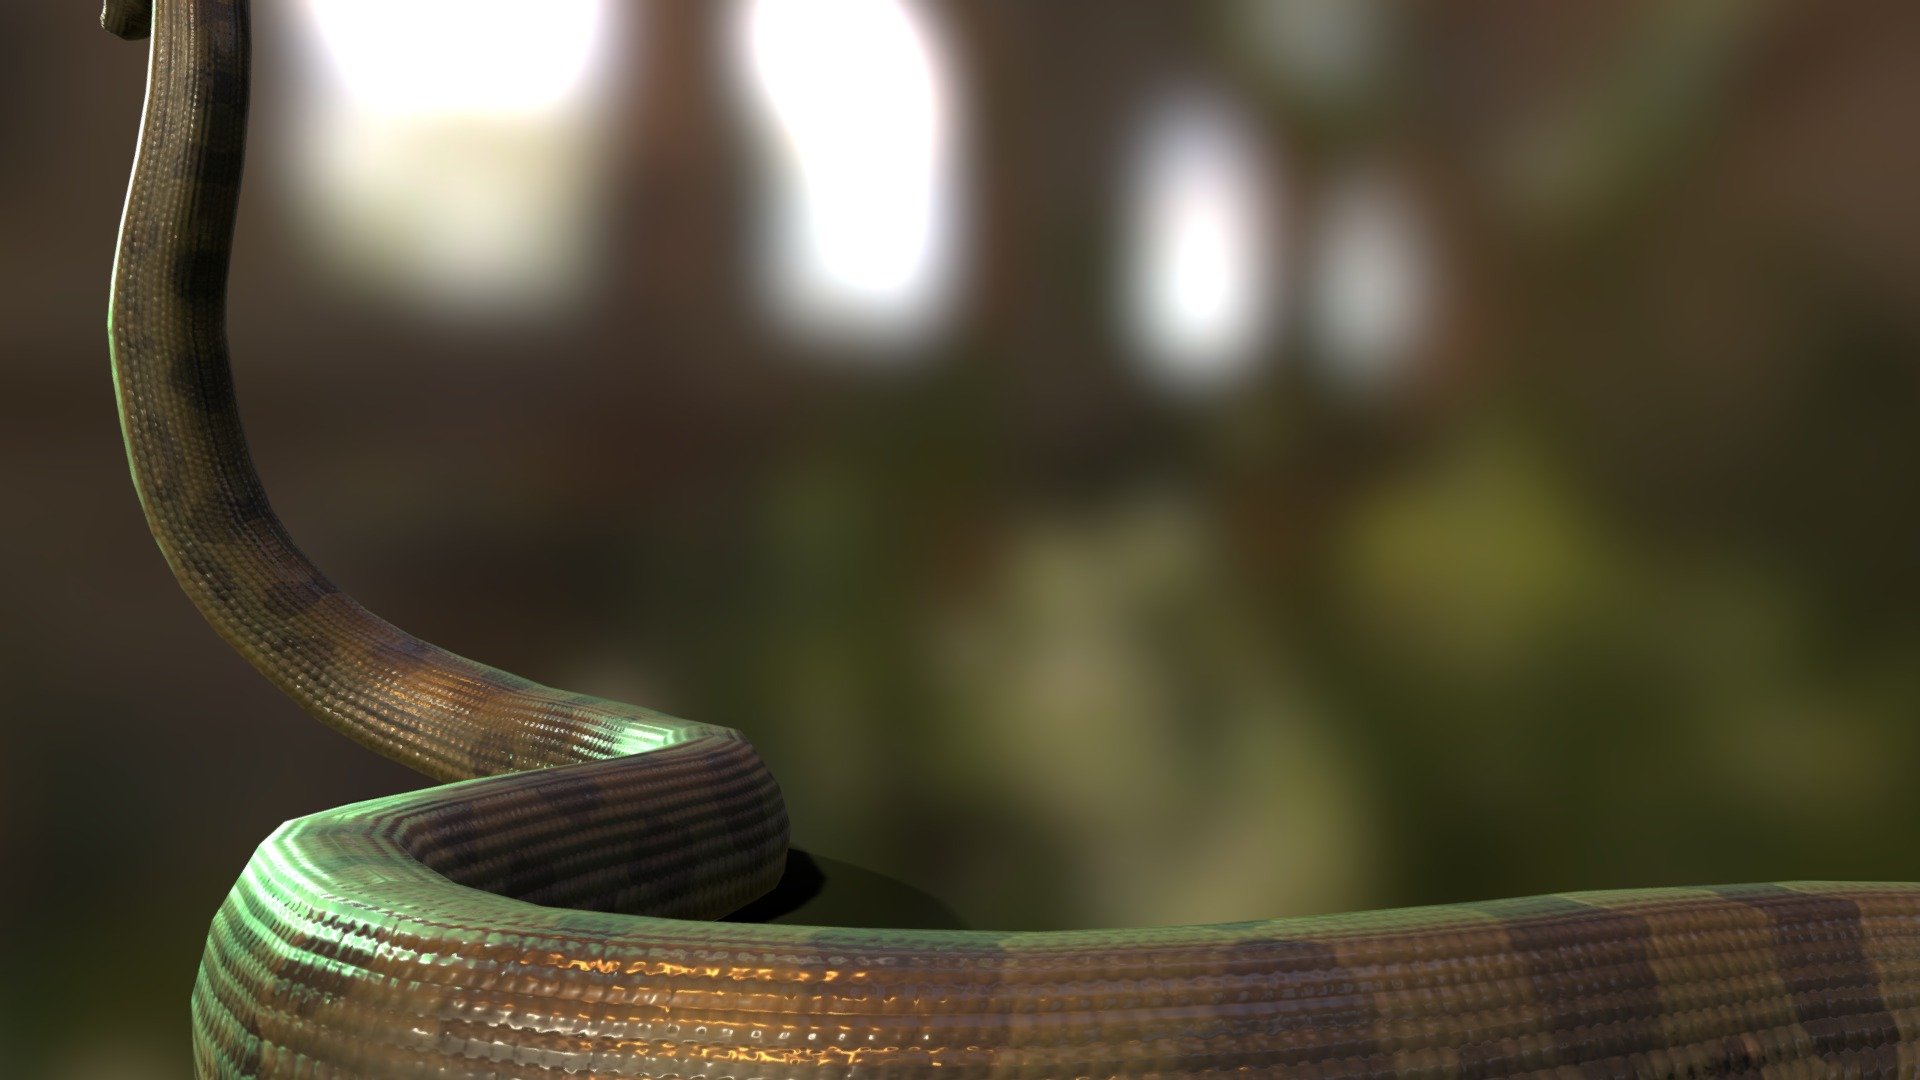 Anaconda - 3D model by Miguelangelo Rosario (@miguelangelo2k) 3d model